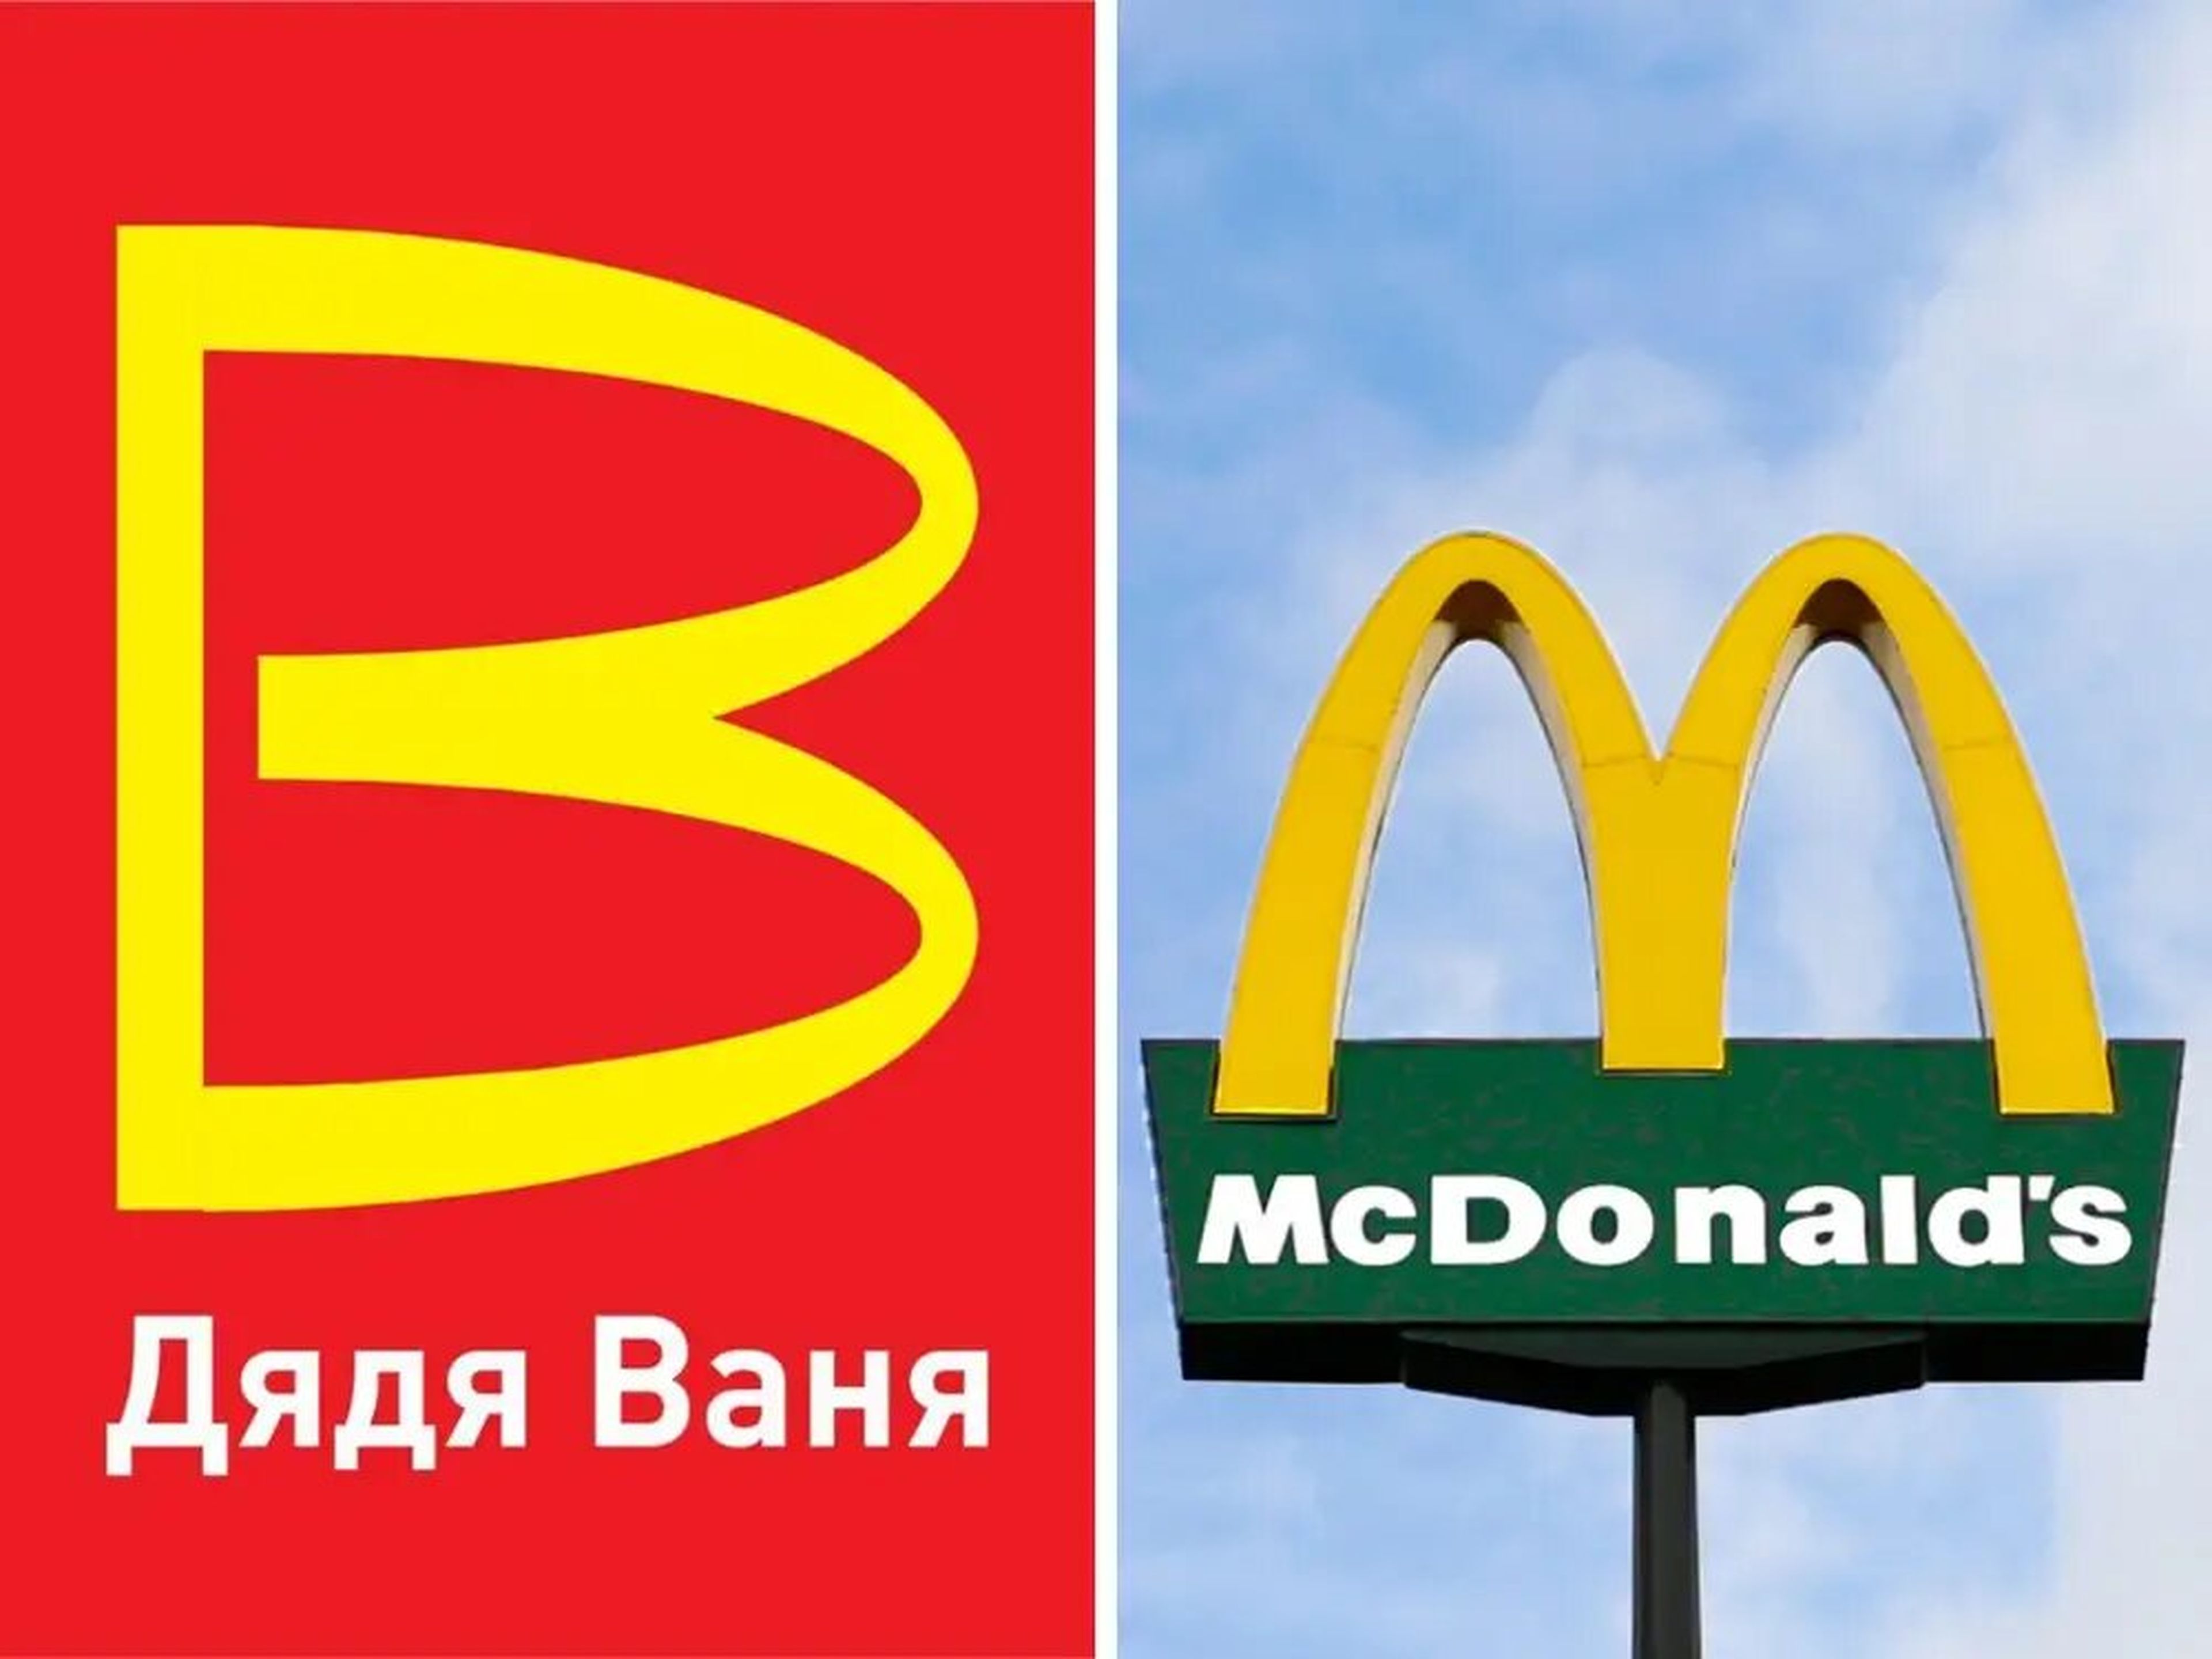 El nuevo logotipo presentado por la cadena rusa de comida rápida Uncle Vanya (a la izquierda) guarda cierta similitud con los icónicos Arcos Dorados de McDondald's.